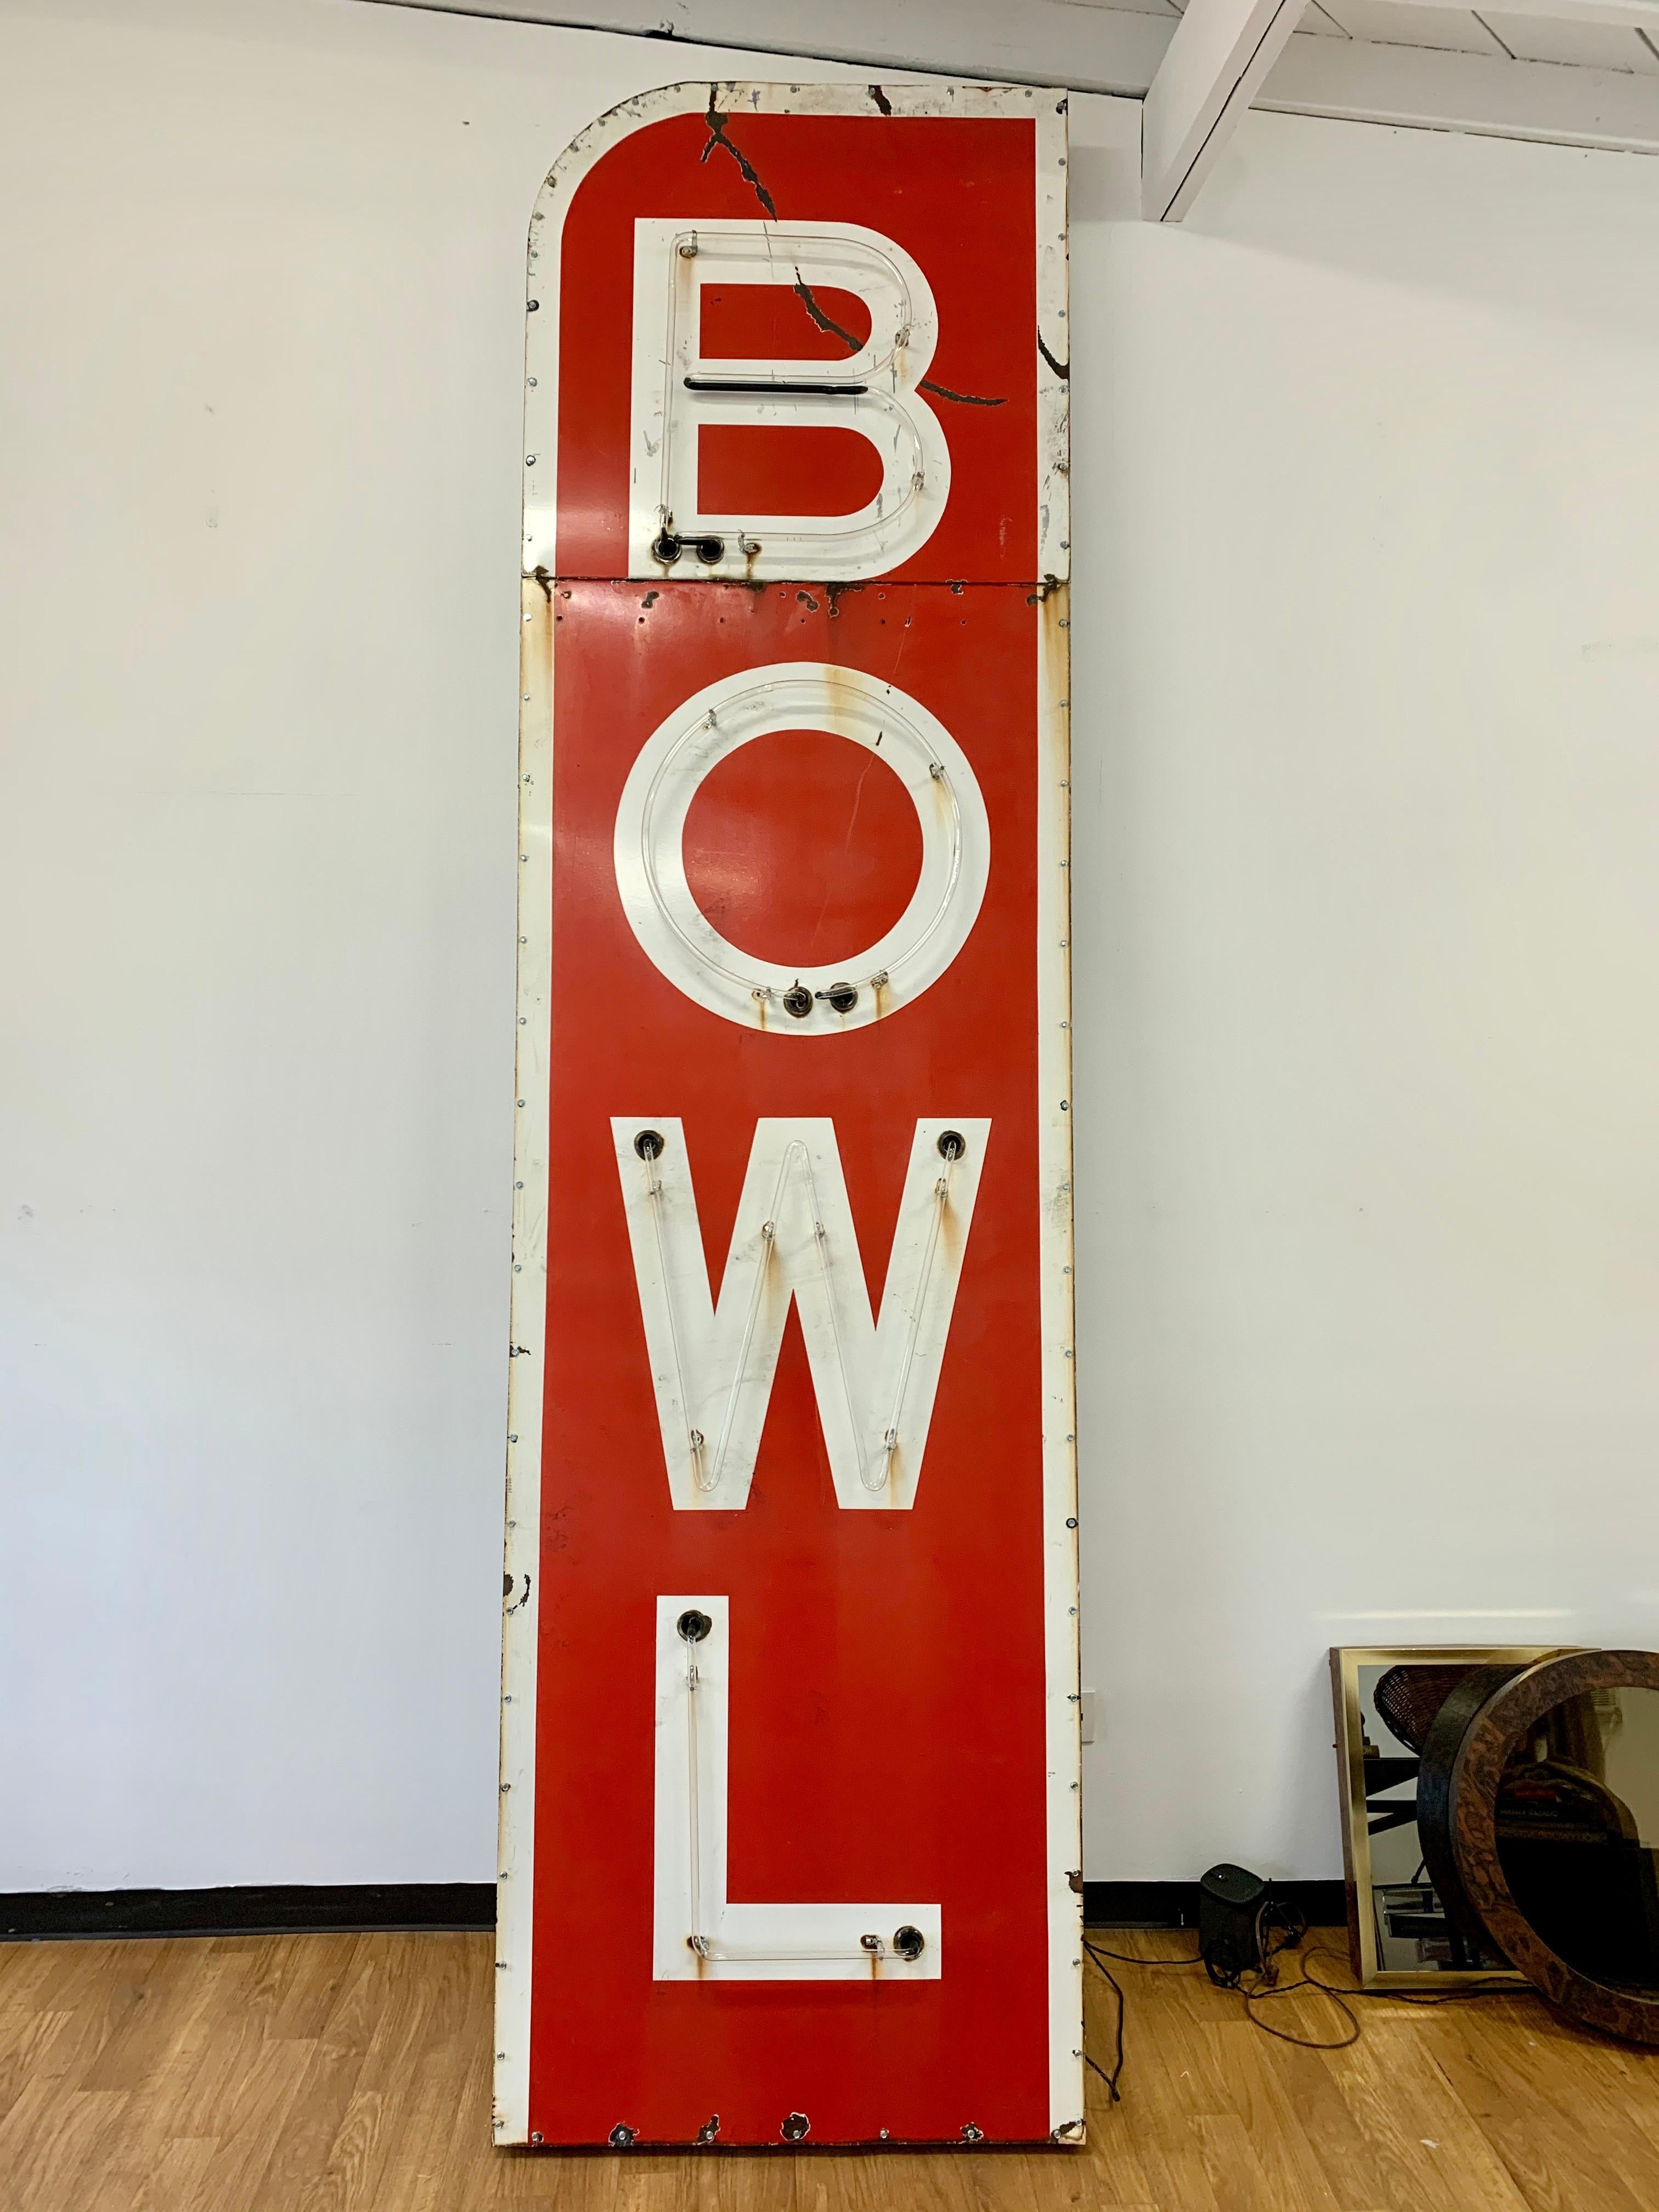 Massives 12,5 Fuß hohes Bowlingschild aus Metall und Neon aus den 1960er Jahren. Das Schild ist rot mit weißen Buchstaben und weißer Umrandung. Die Neonlichter sind rot und leuchten Buchstabe für Buchstabe auf: B - 0 - W - L, dann blinken sie aus